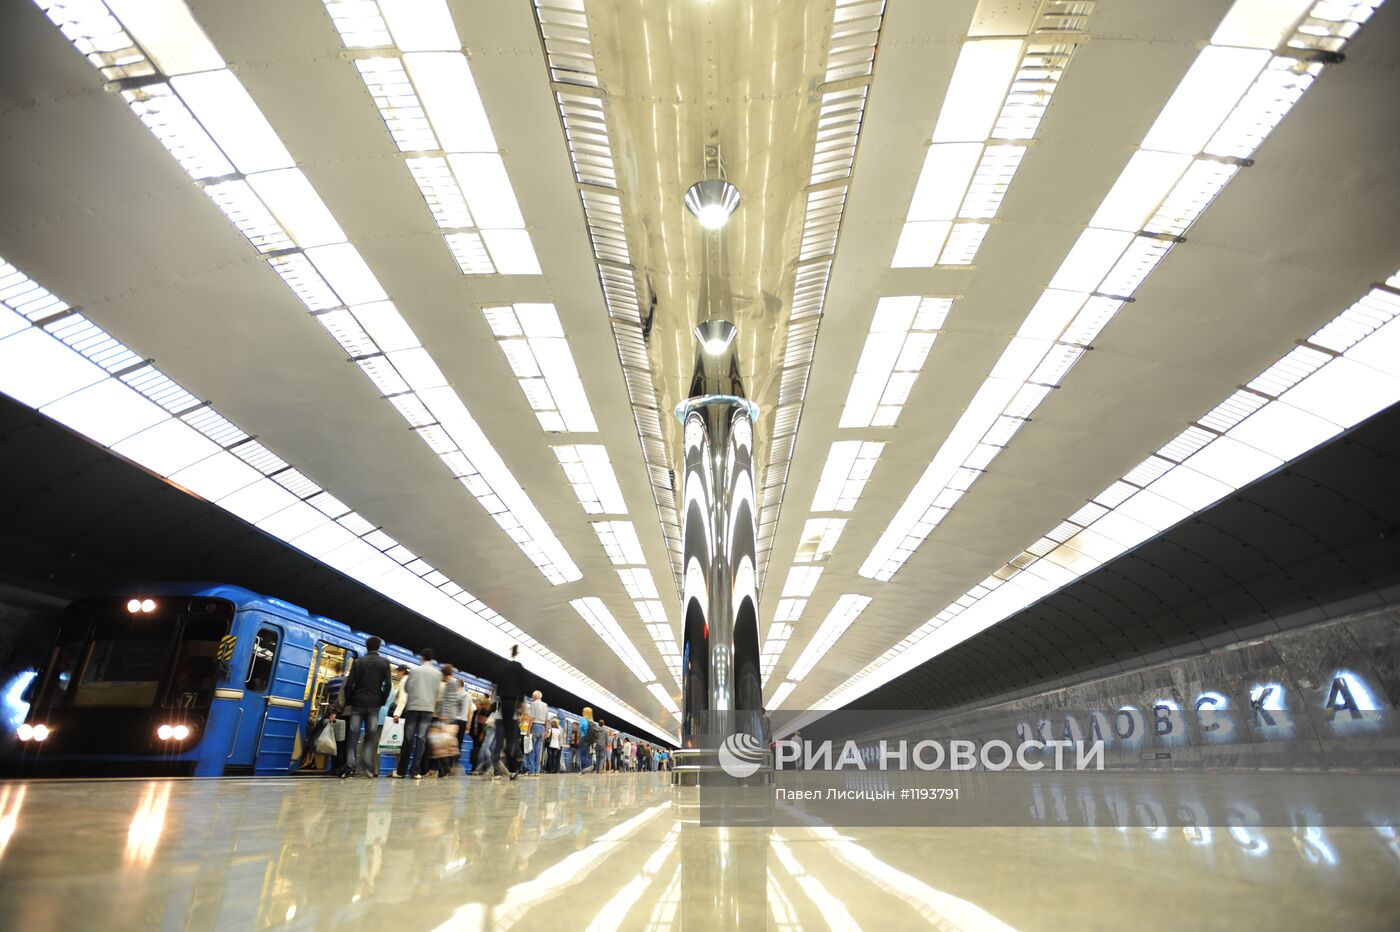 Открытие станции метро "Чкаловская" в Екатеринбурге